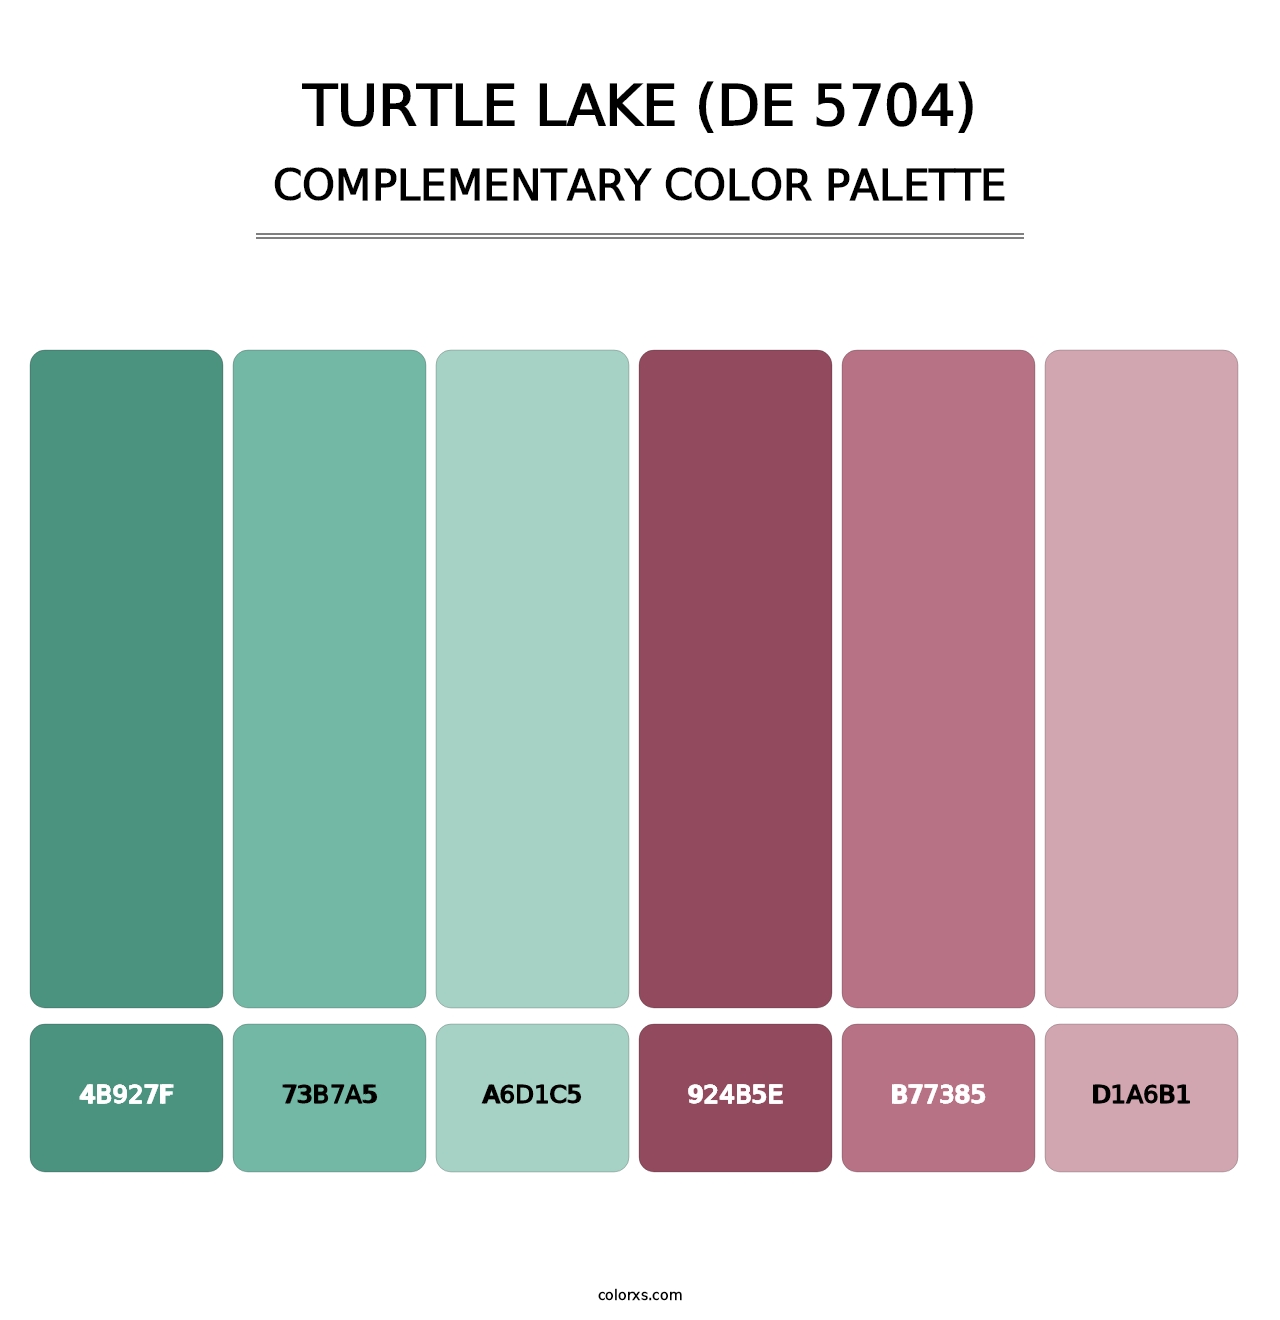 Turtle Lake (DE 5704) - Complementary Color Palette